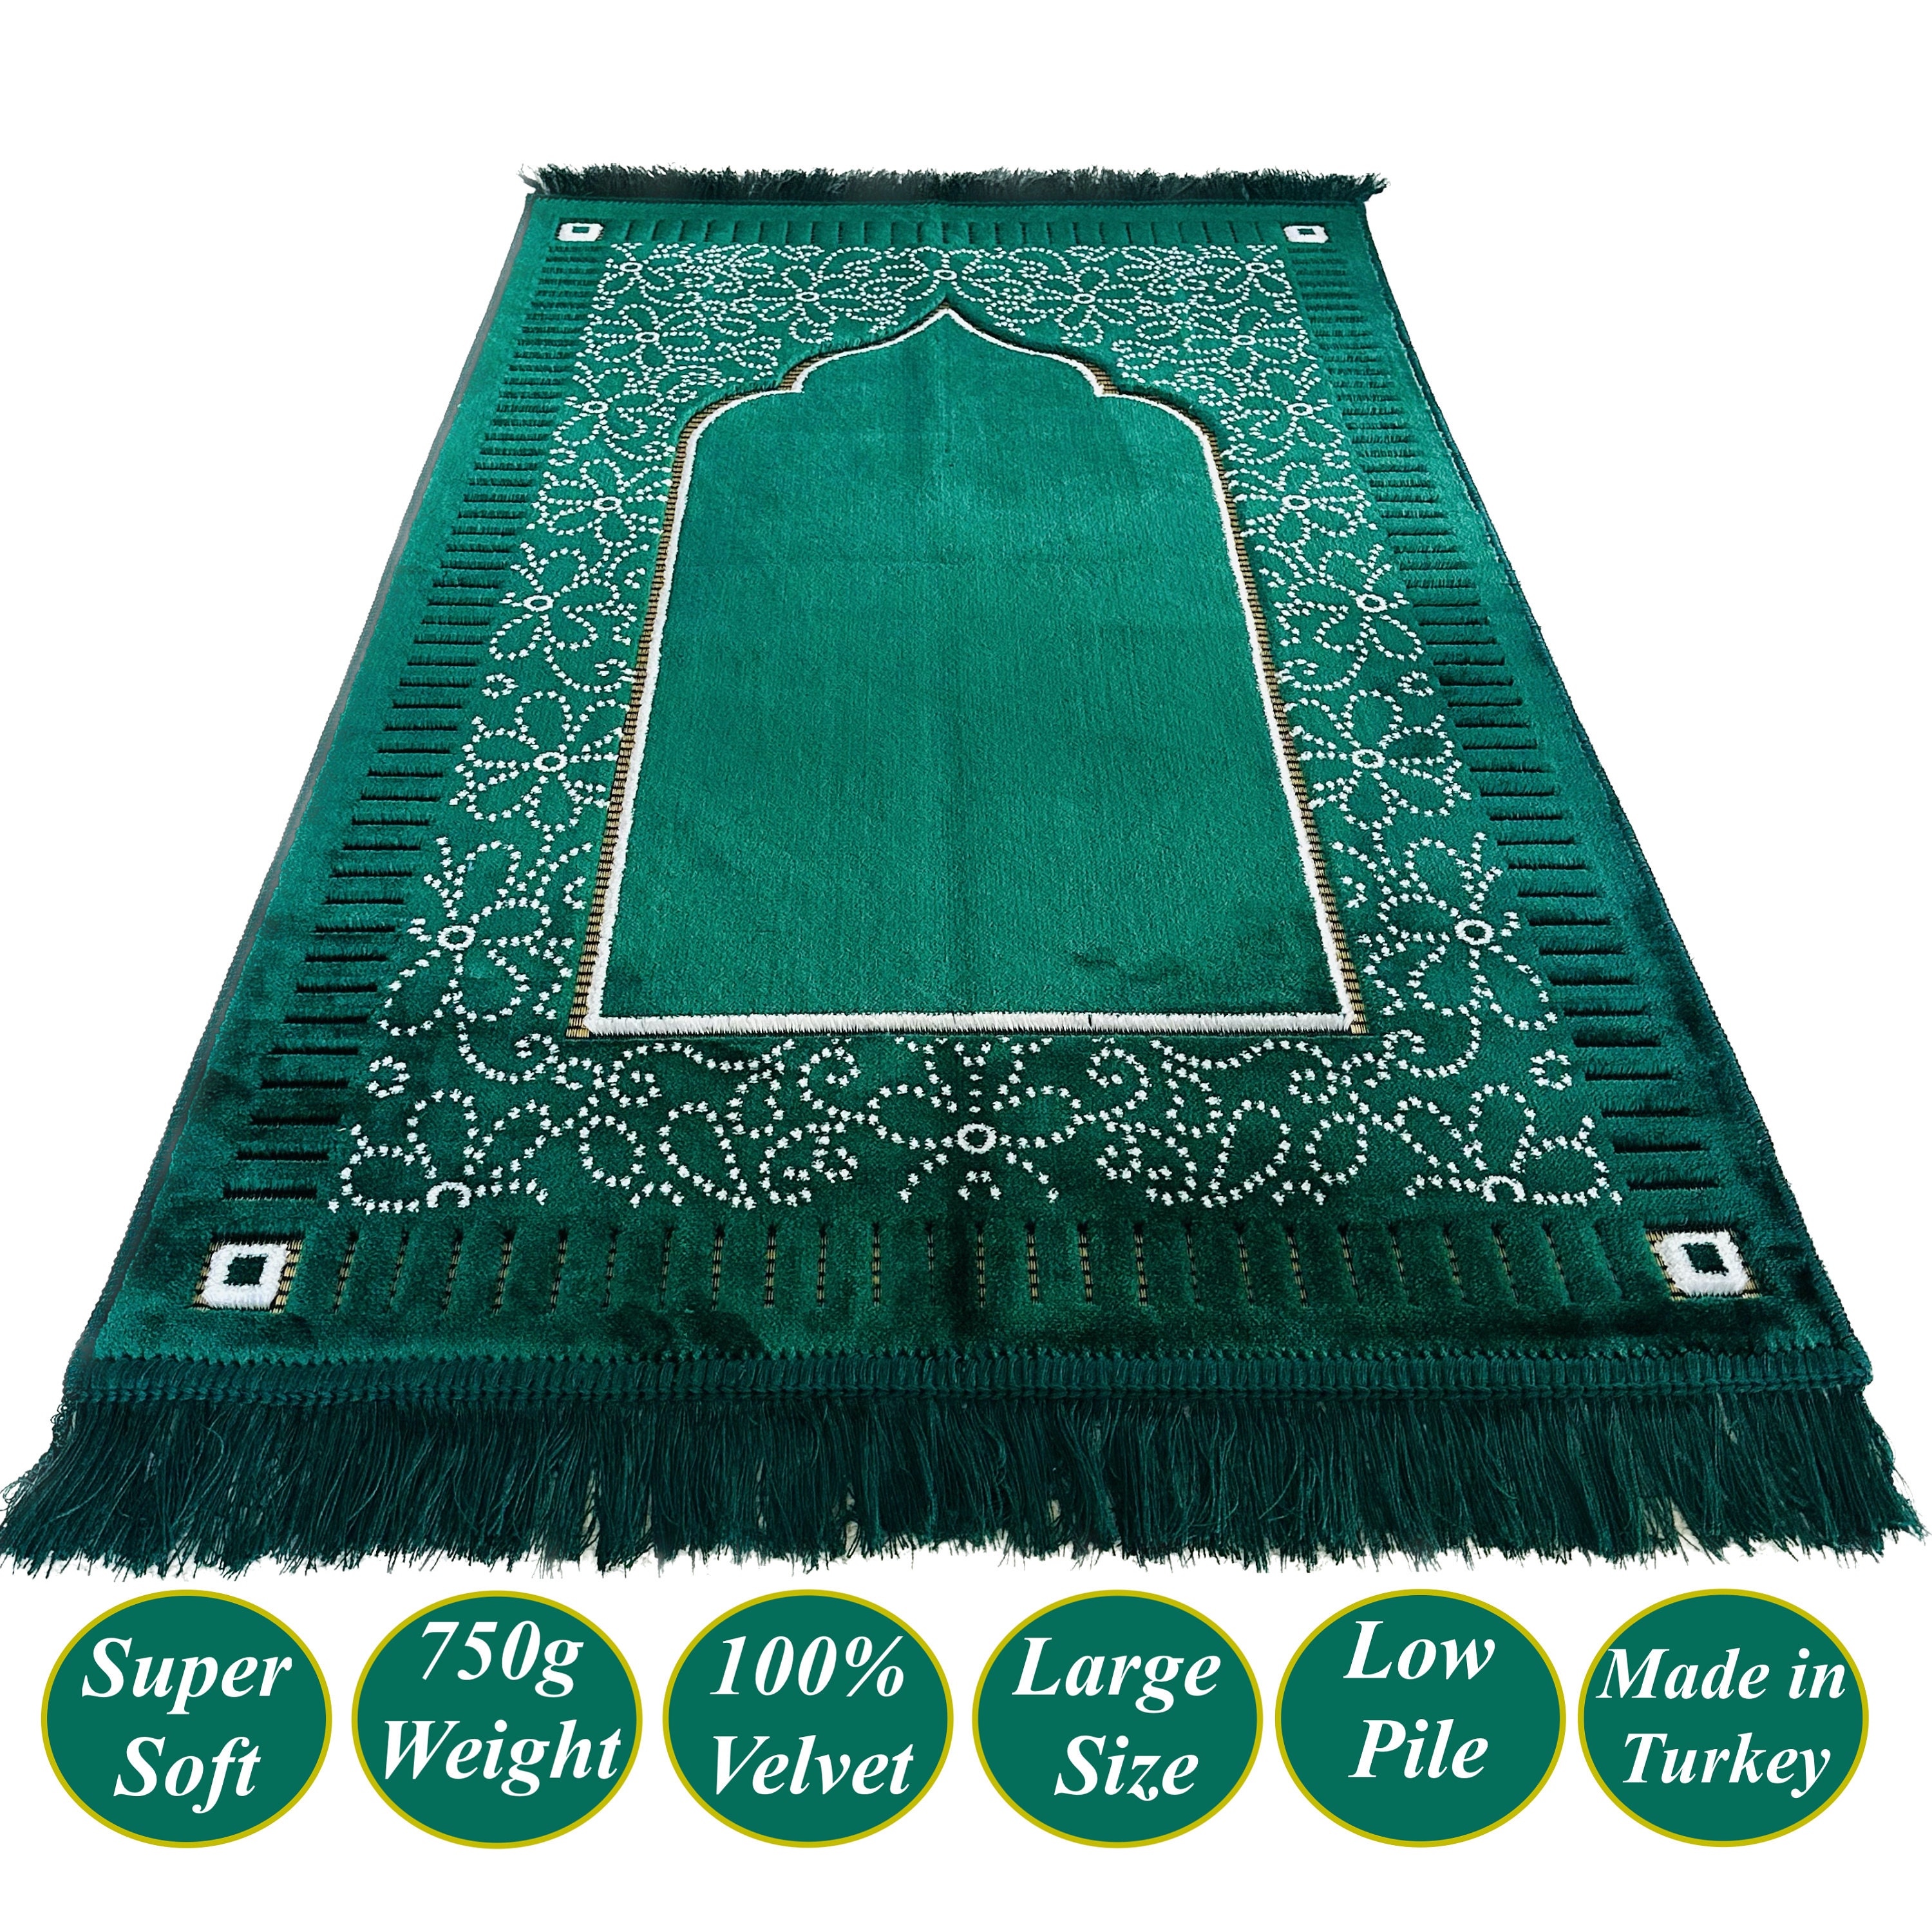 Nouveau Tapis de Prière en Velours de Style Mihrab 750g Grand